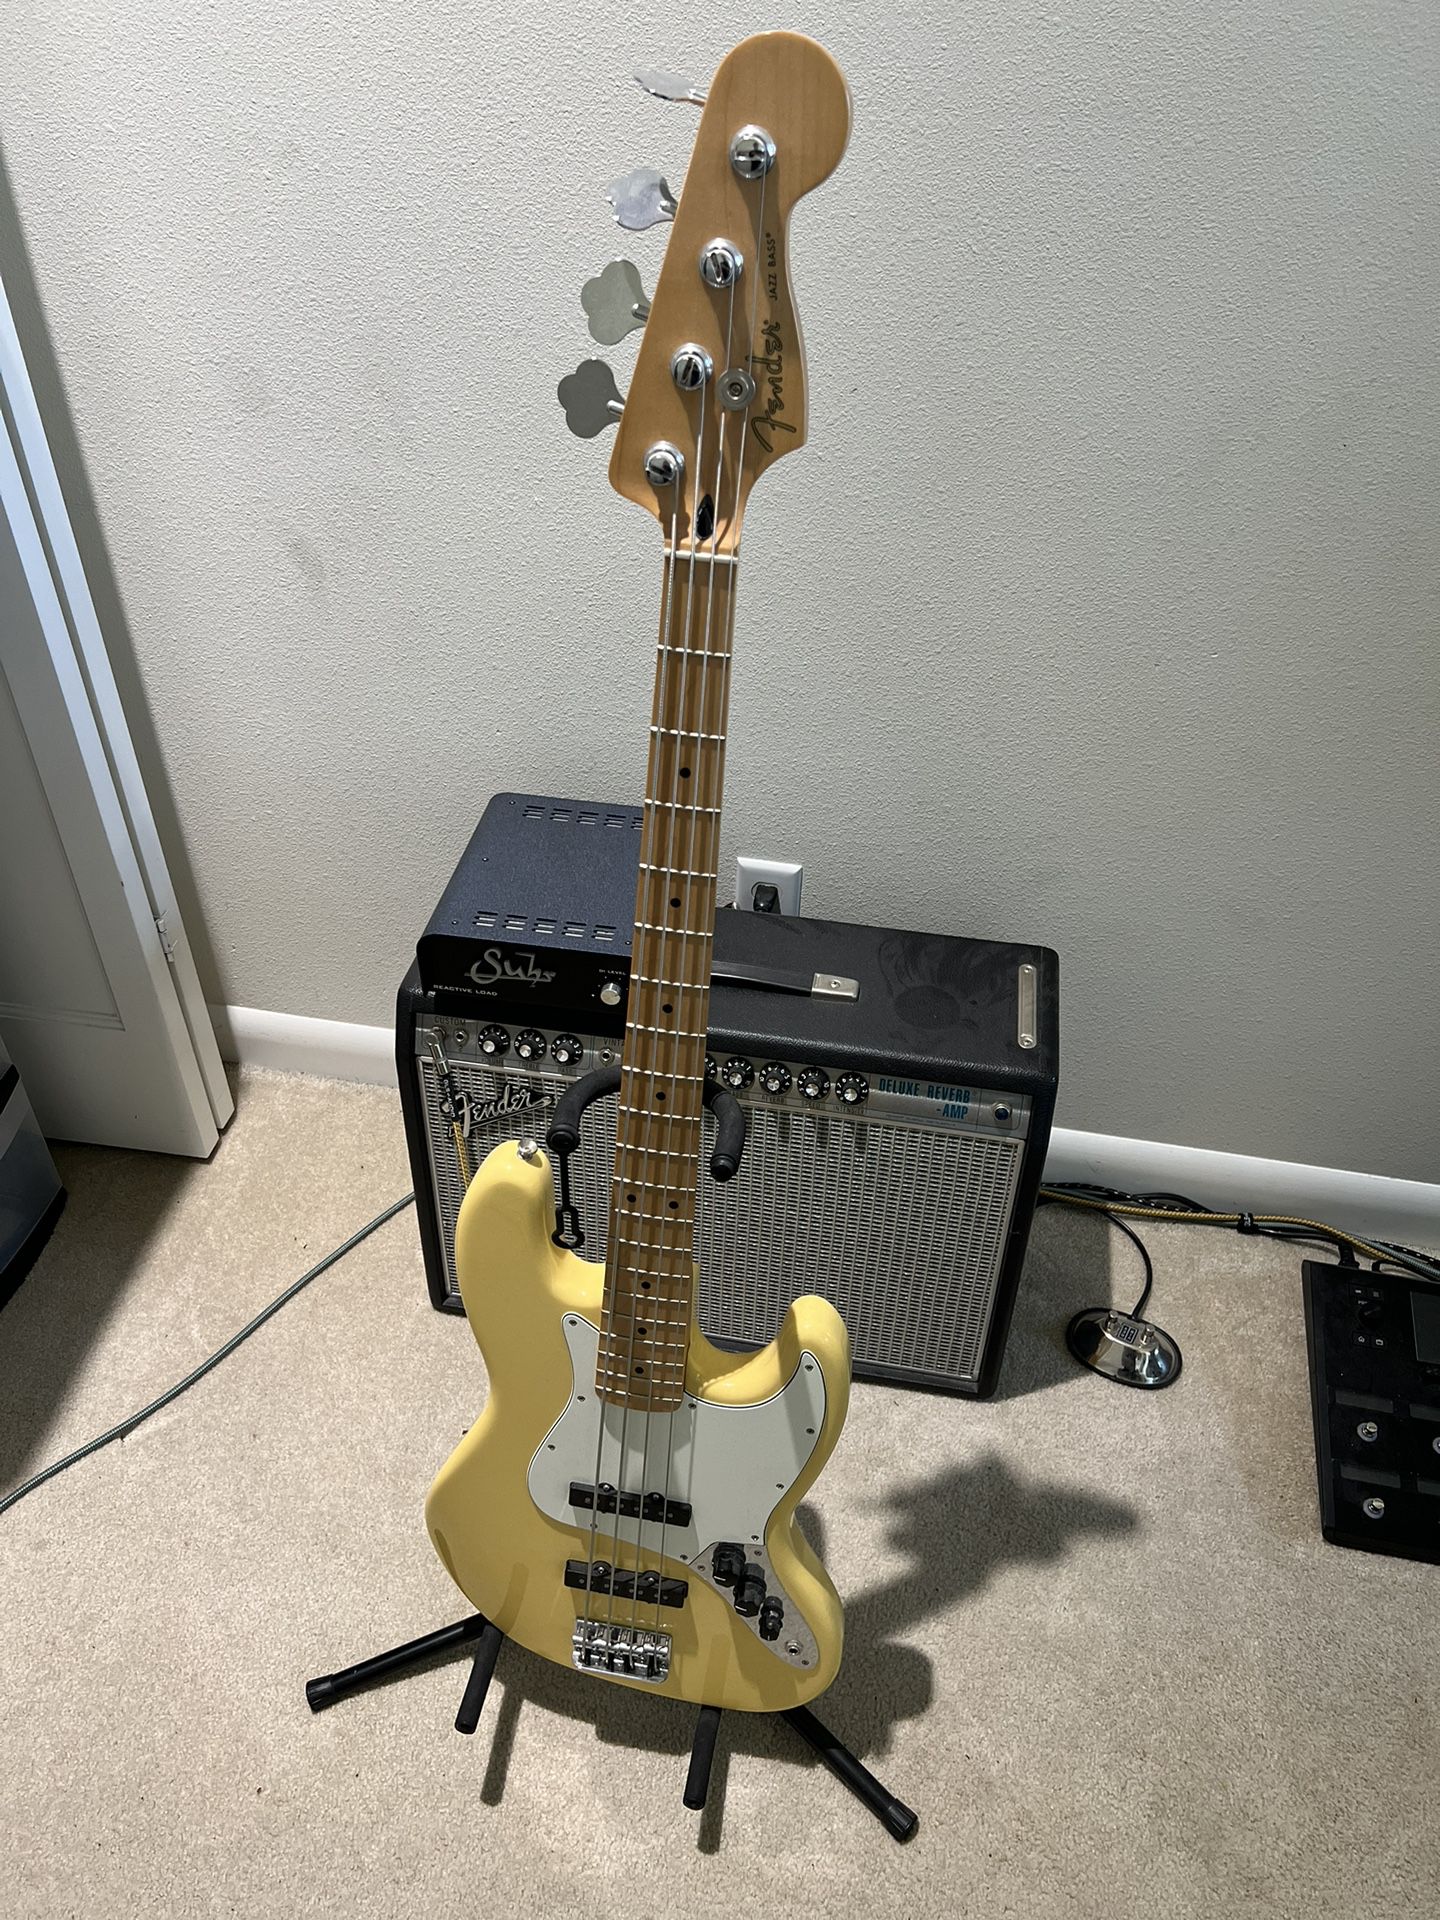 Fender Player Jazz Bass 